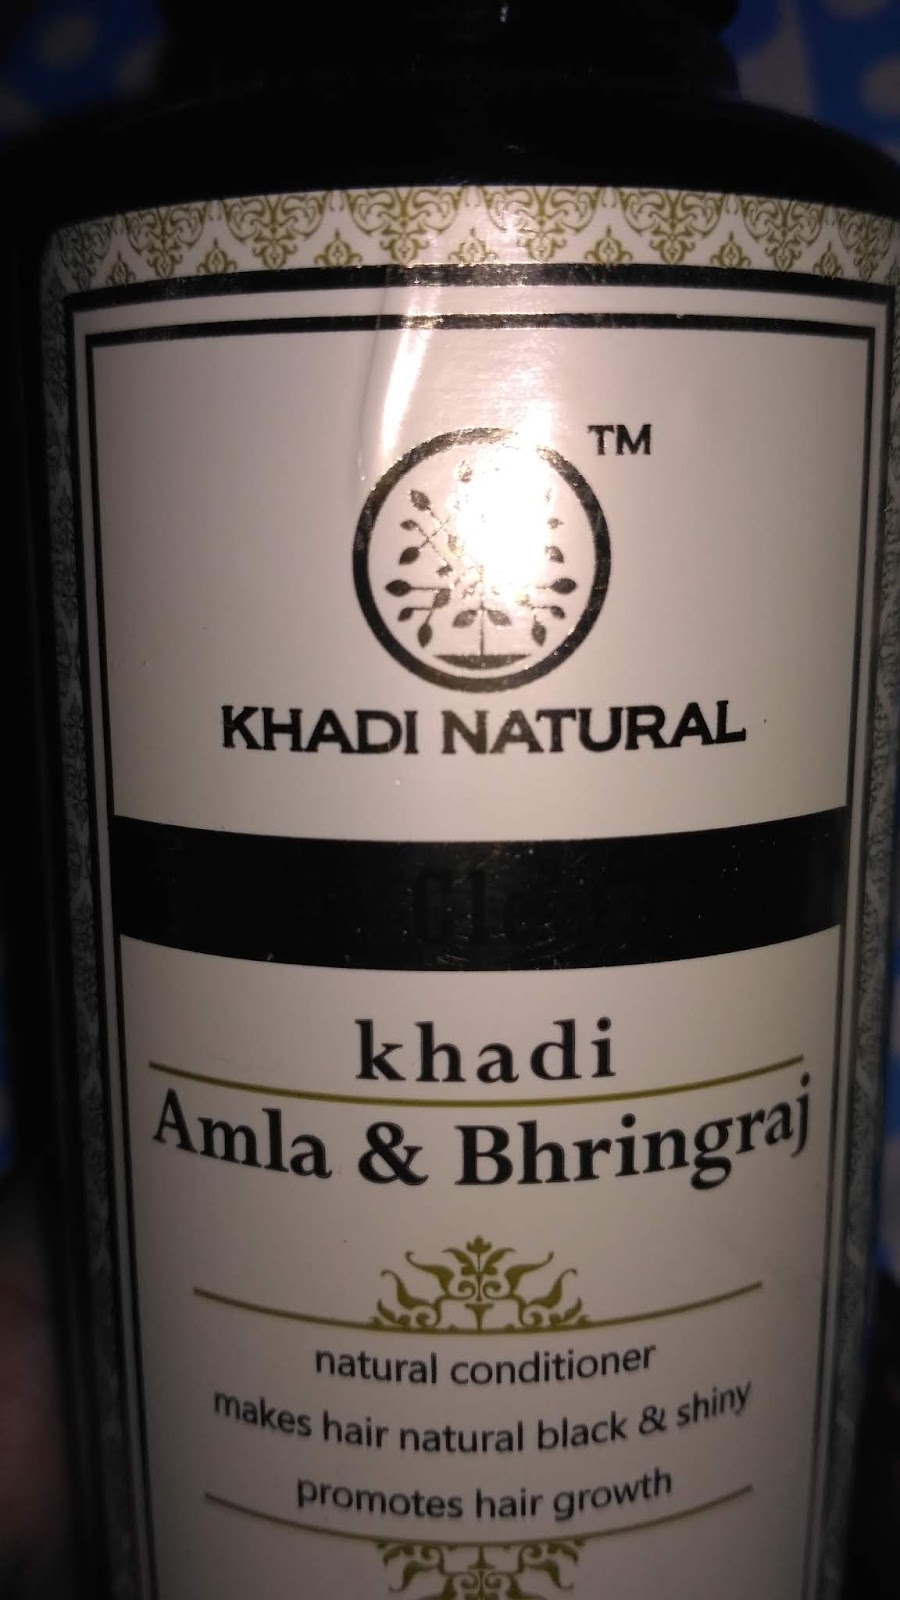 Shampoo - Vagad's Khadi